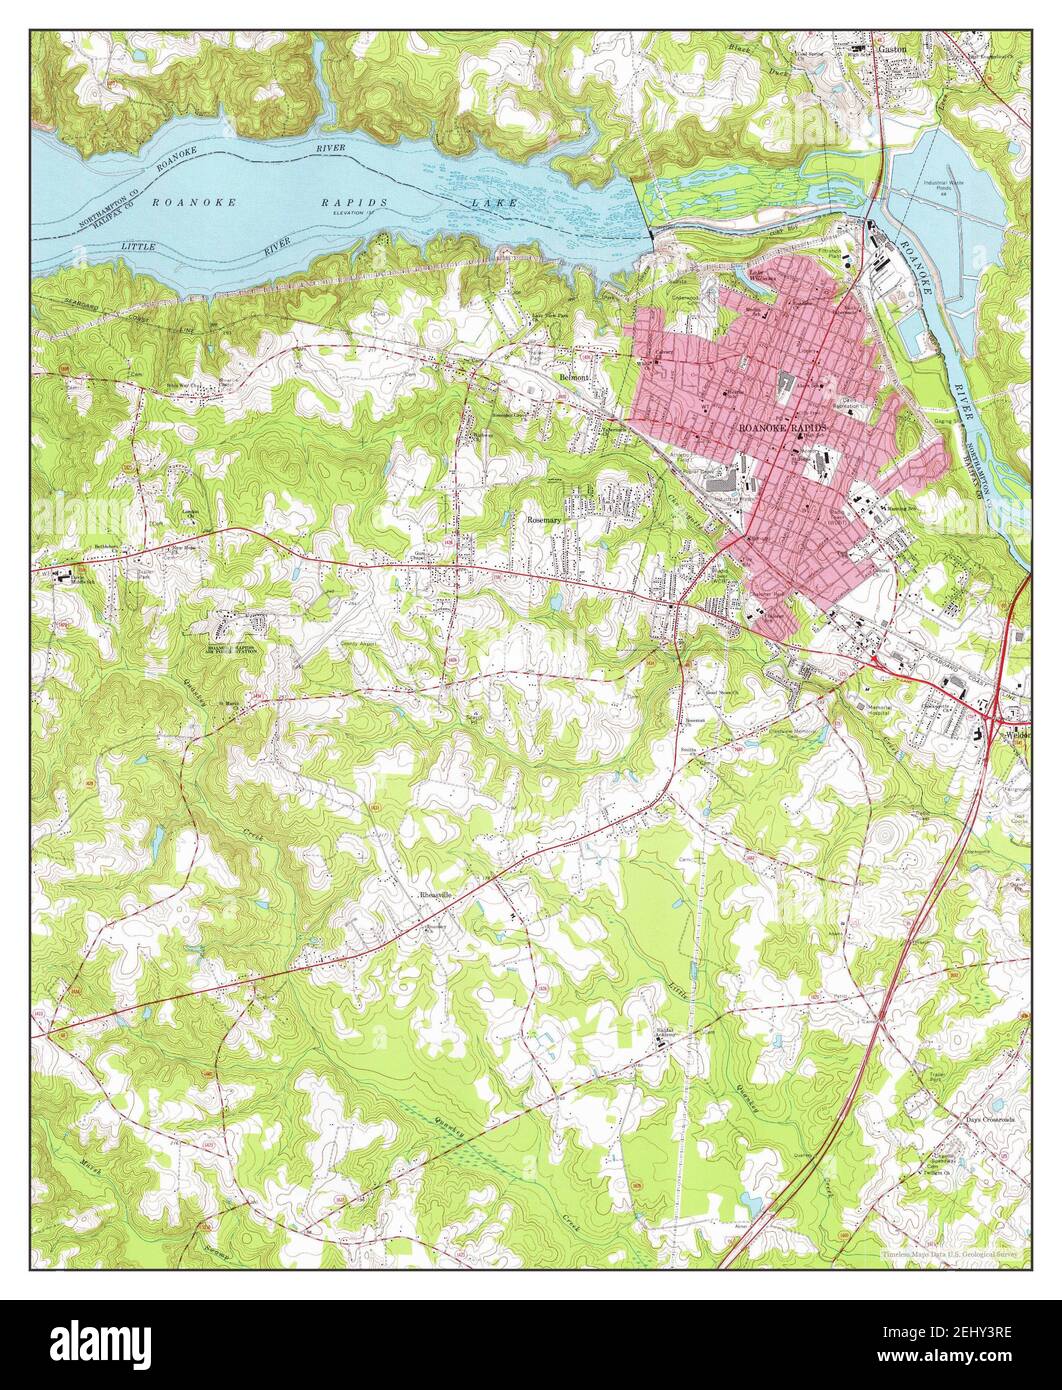 Roanoke Rapids, Caroline du Nord, carte 1974, 1:24000, États-Unis d'Amérique par Timeless Maps, données U.S. Geological Survey Banque D'Images